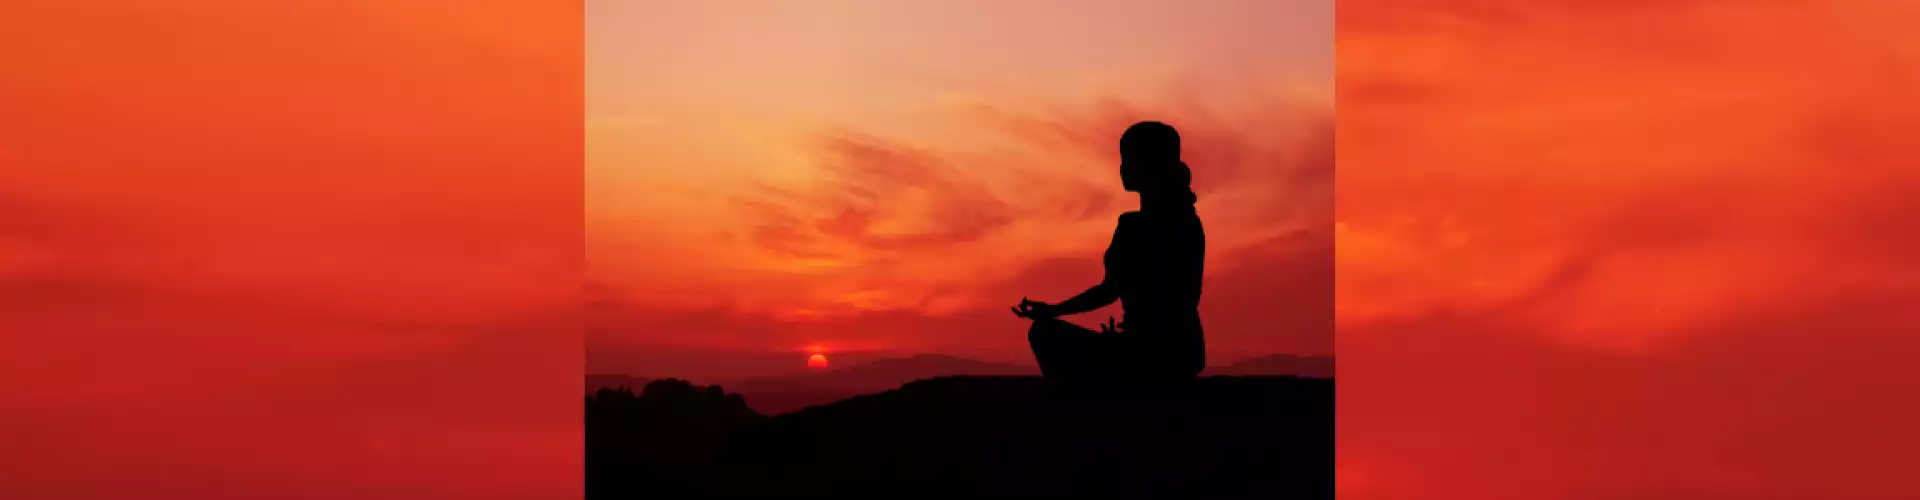 7 Csakra jóga Üdvözlet és meditáció